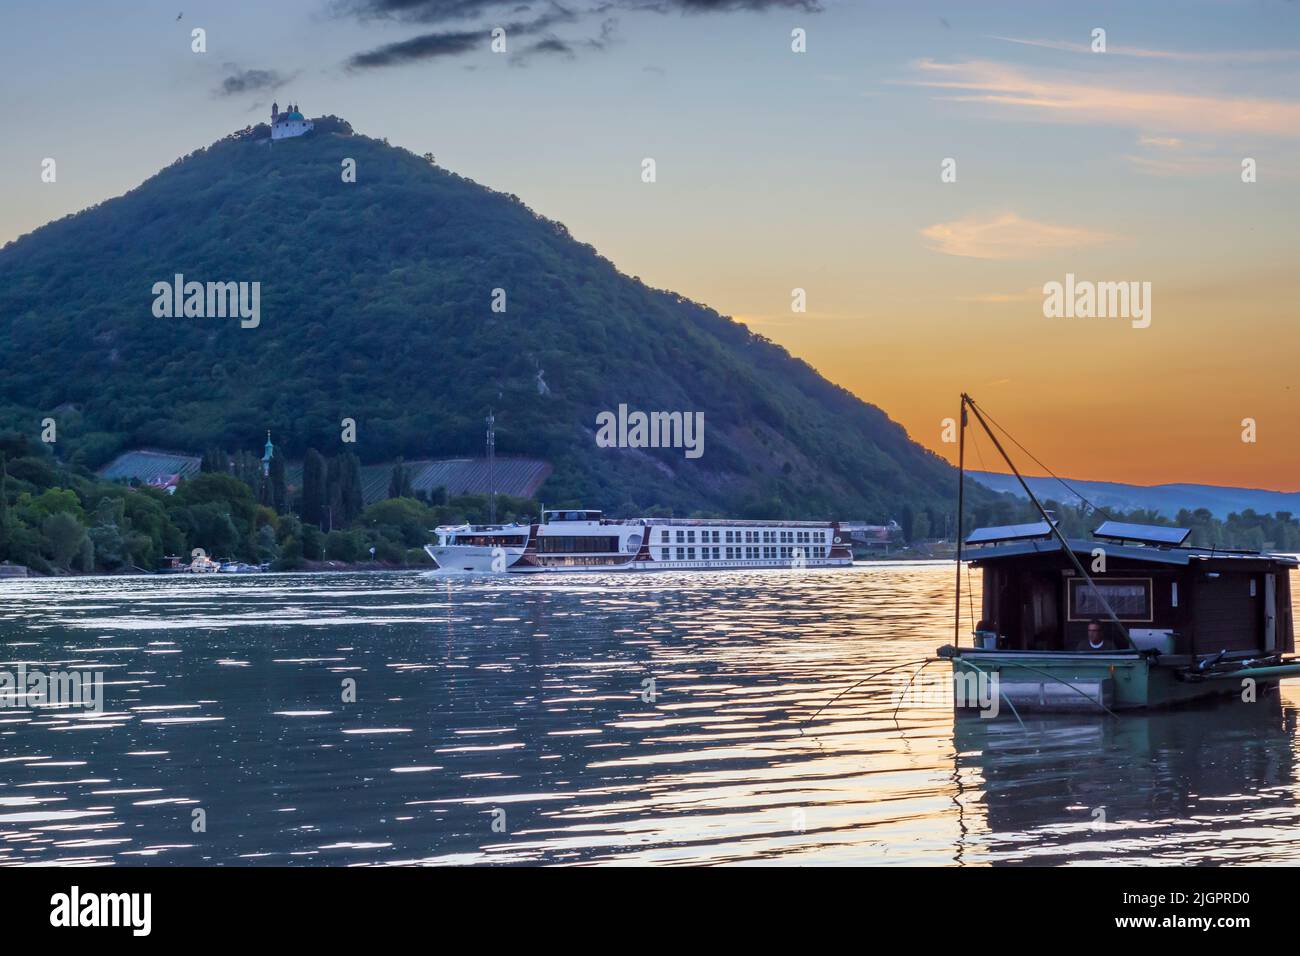 Viena: Puesta de sol en el río Donau (Danubio), vista a la montaña Leopoldsberg (con iglesia), barco Daubel con red de pesca elevadora, barco crucero en 19. Dö Foto de stock